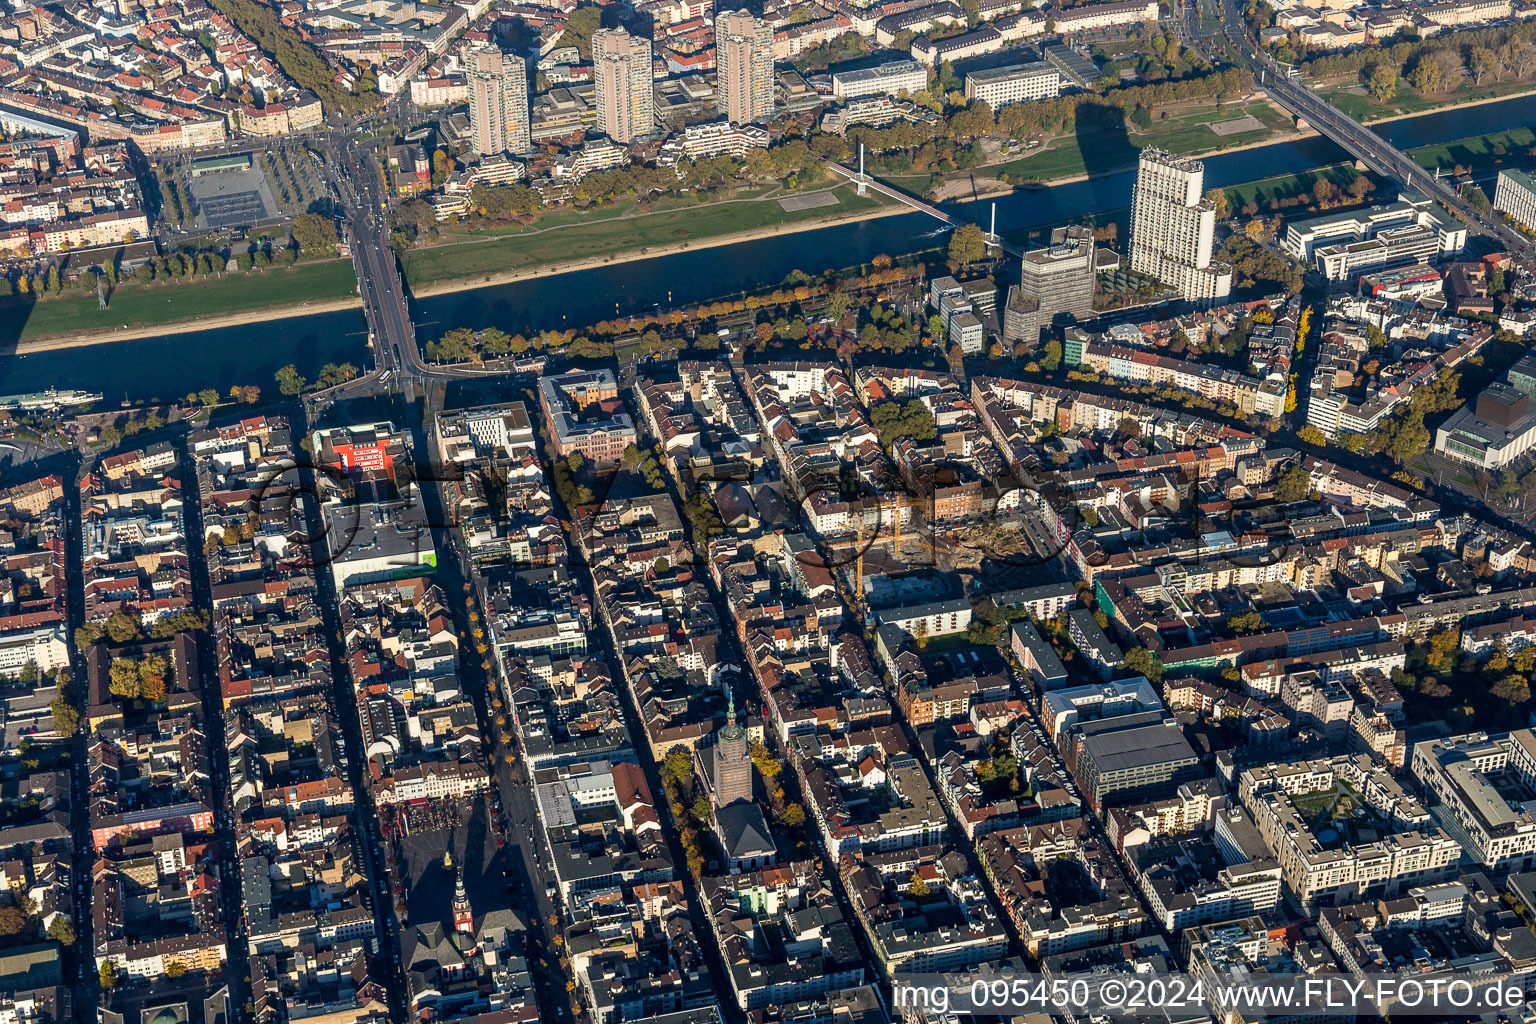 Luftbild von Stadtzentrum im Innenstadtbereich am Ufer des Flußverlaufes des Neckar im Ortsteil Quadrate in Mannheim im Bundesland Baden-Württemberg, Deutschland